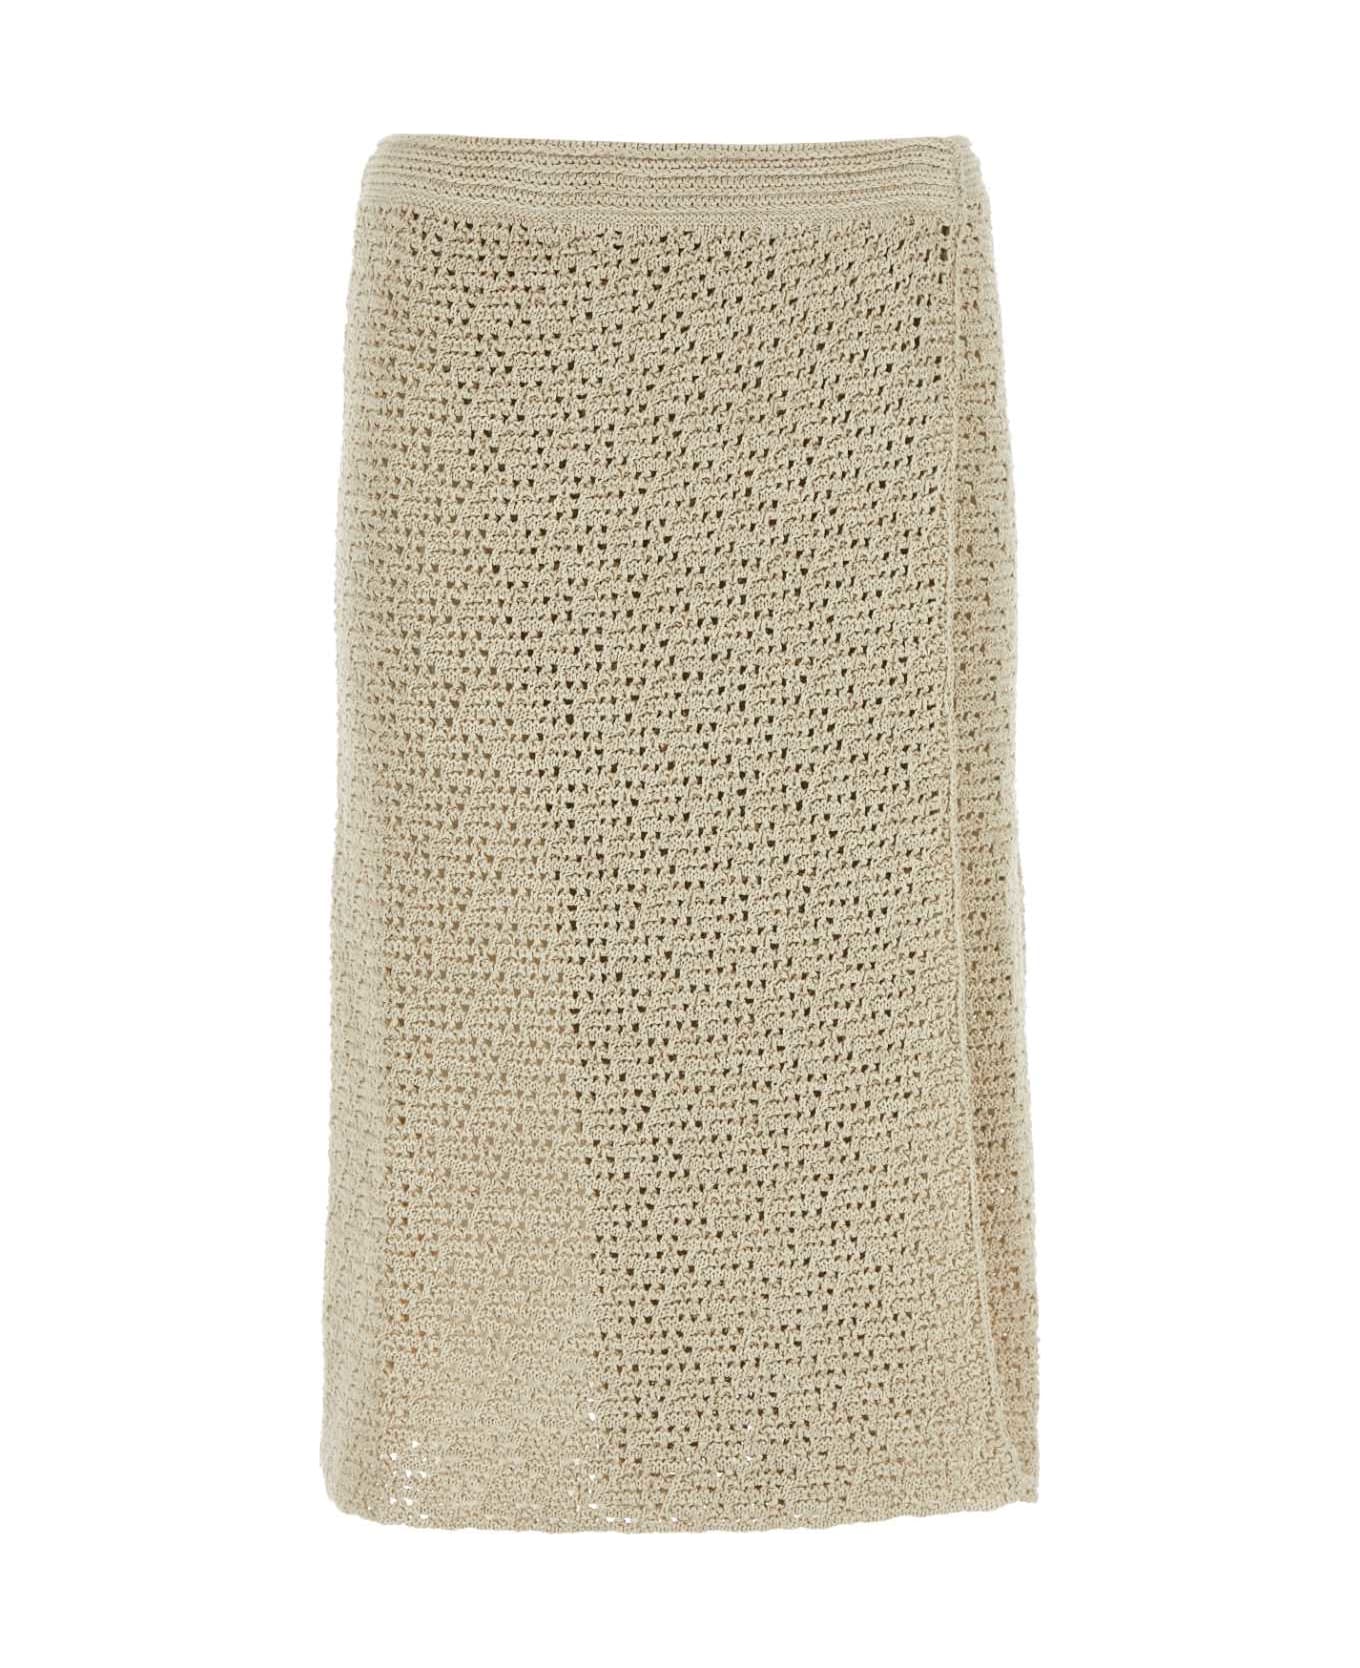 Bottega Veneta Sand Crochet Skirt - SAND